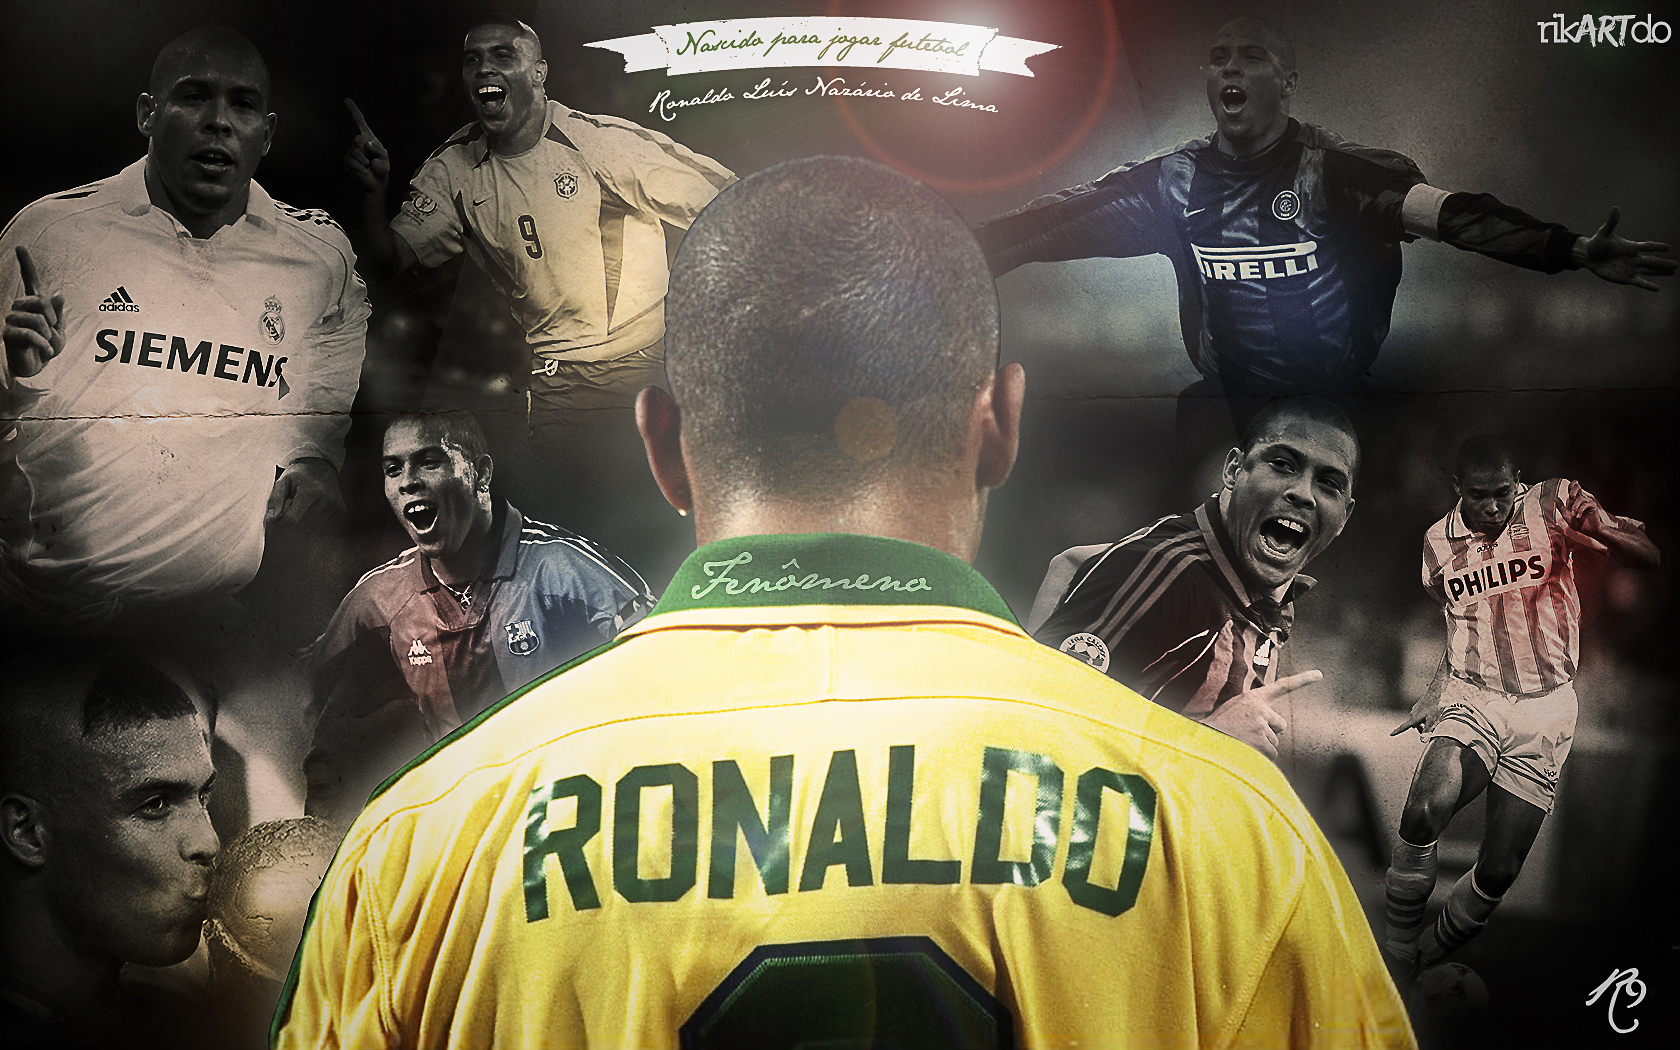 Ronaldo Nazário Picture